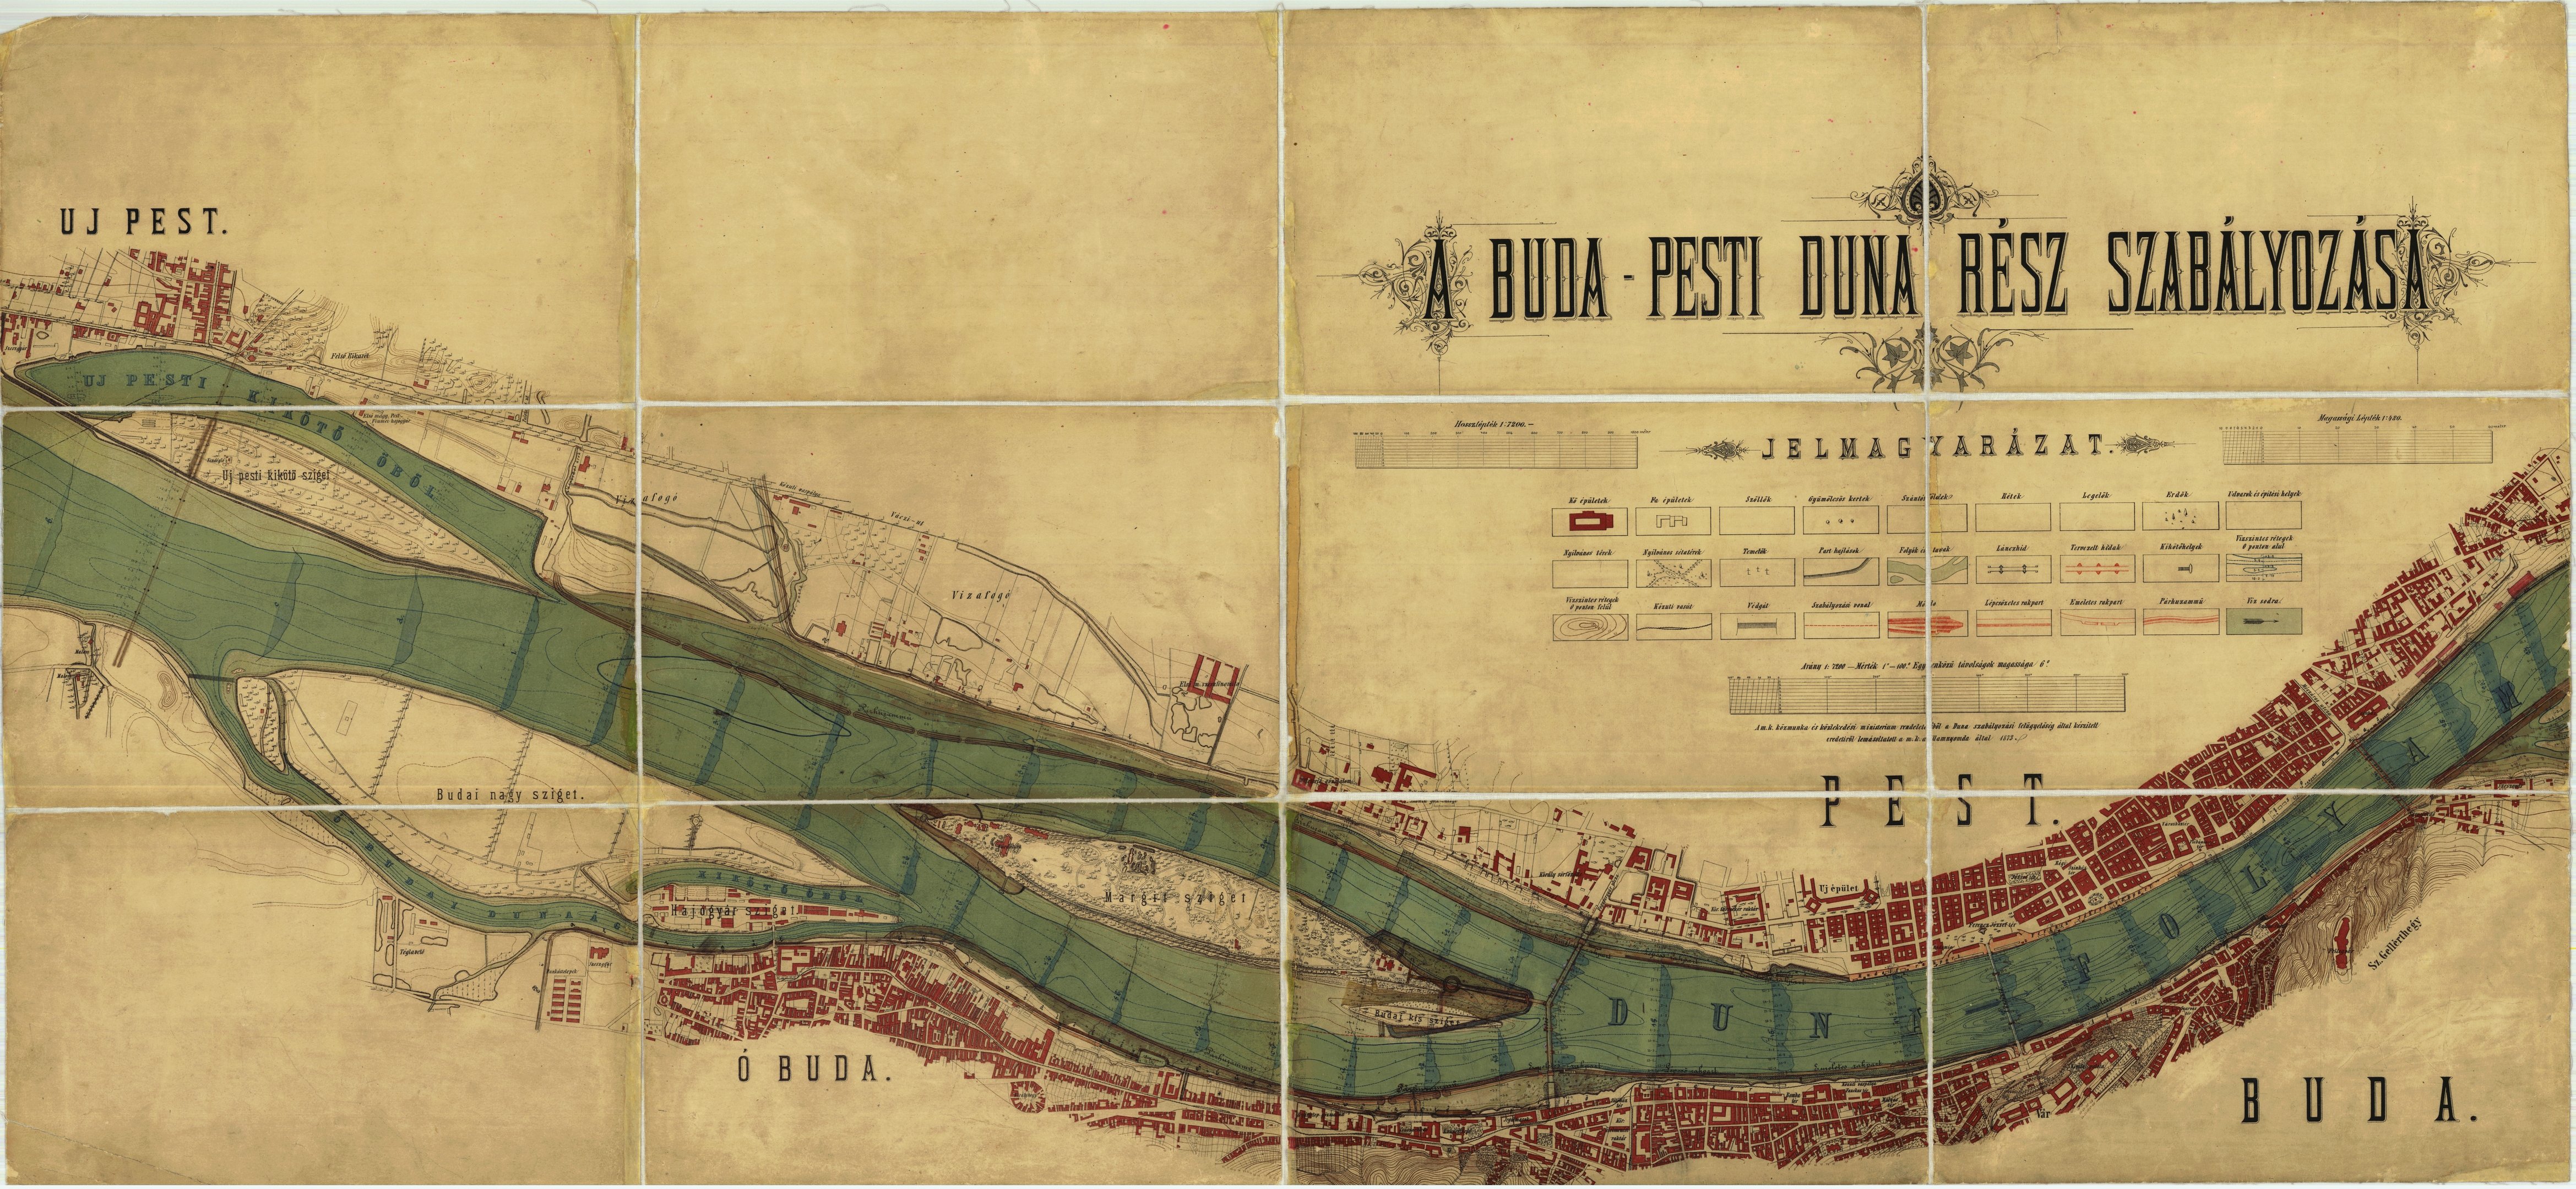 A Buda-Pesti Duna rész szabályozása (Magyar Környezetvédelmi és Vízügyi Múzeum - Duna Múzeum CC BY-NC-SA)